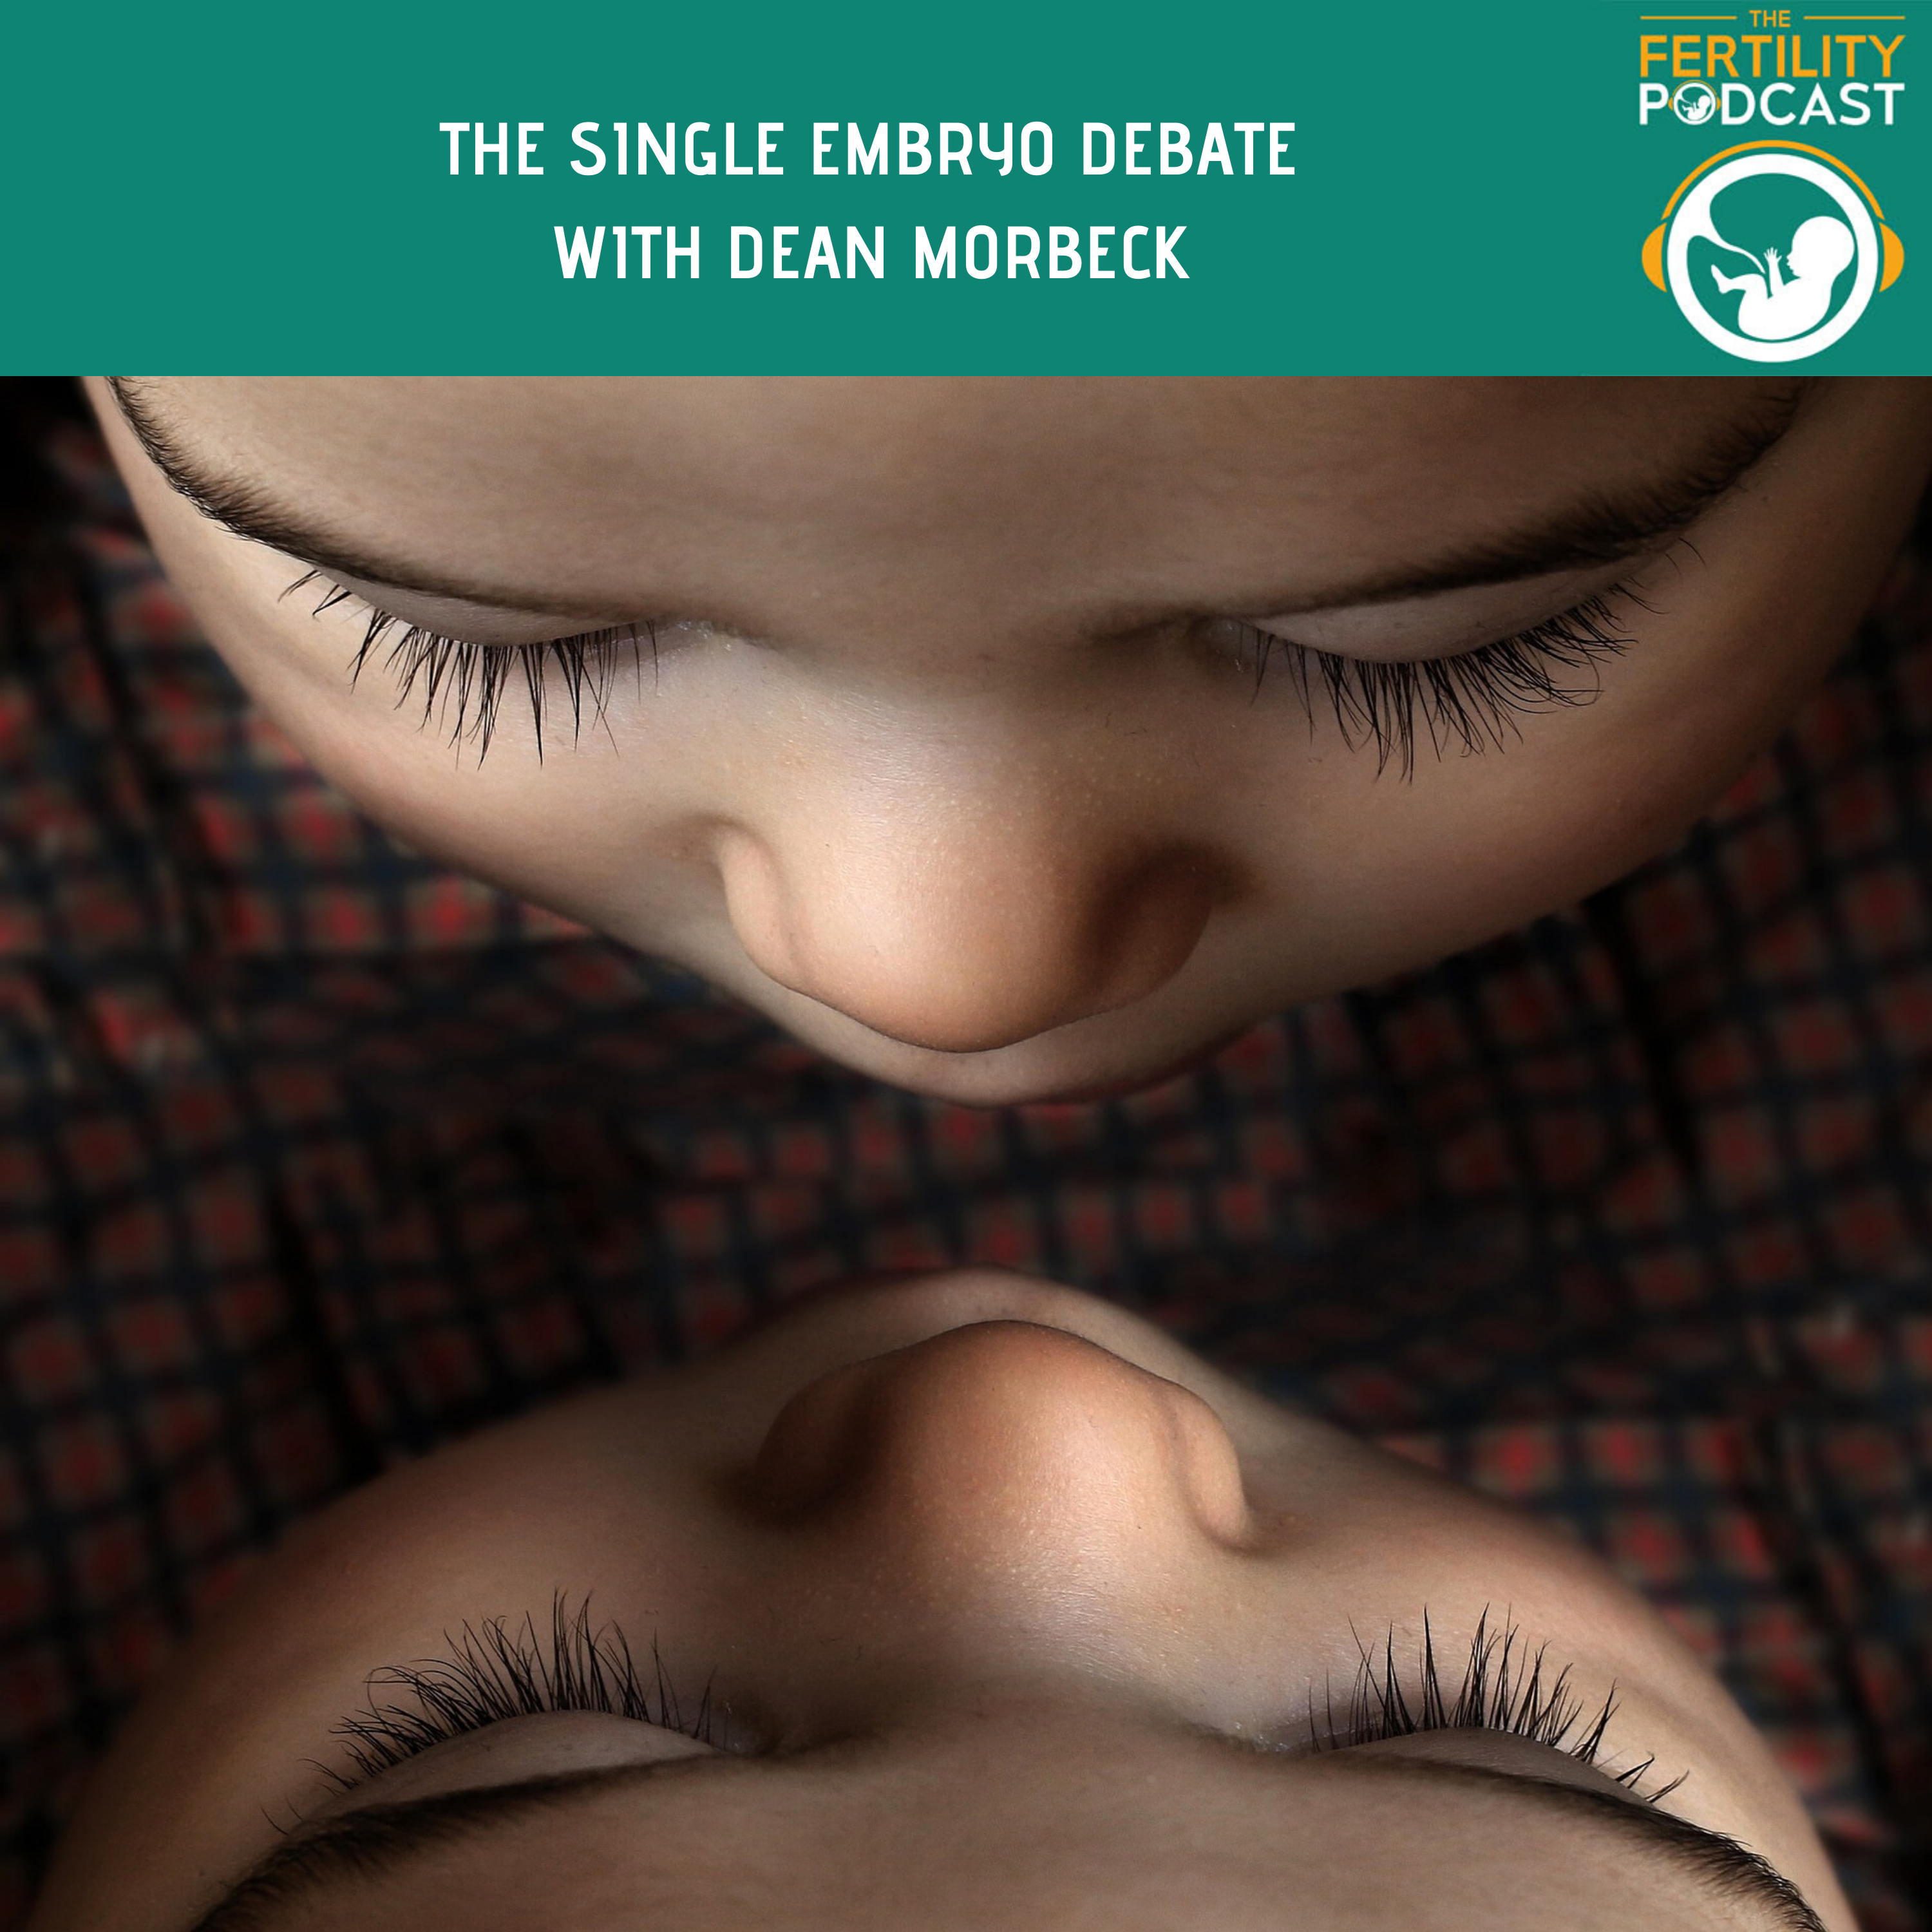 The Single Embryo debate